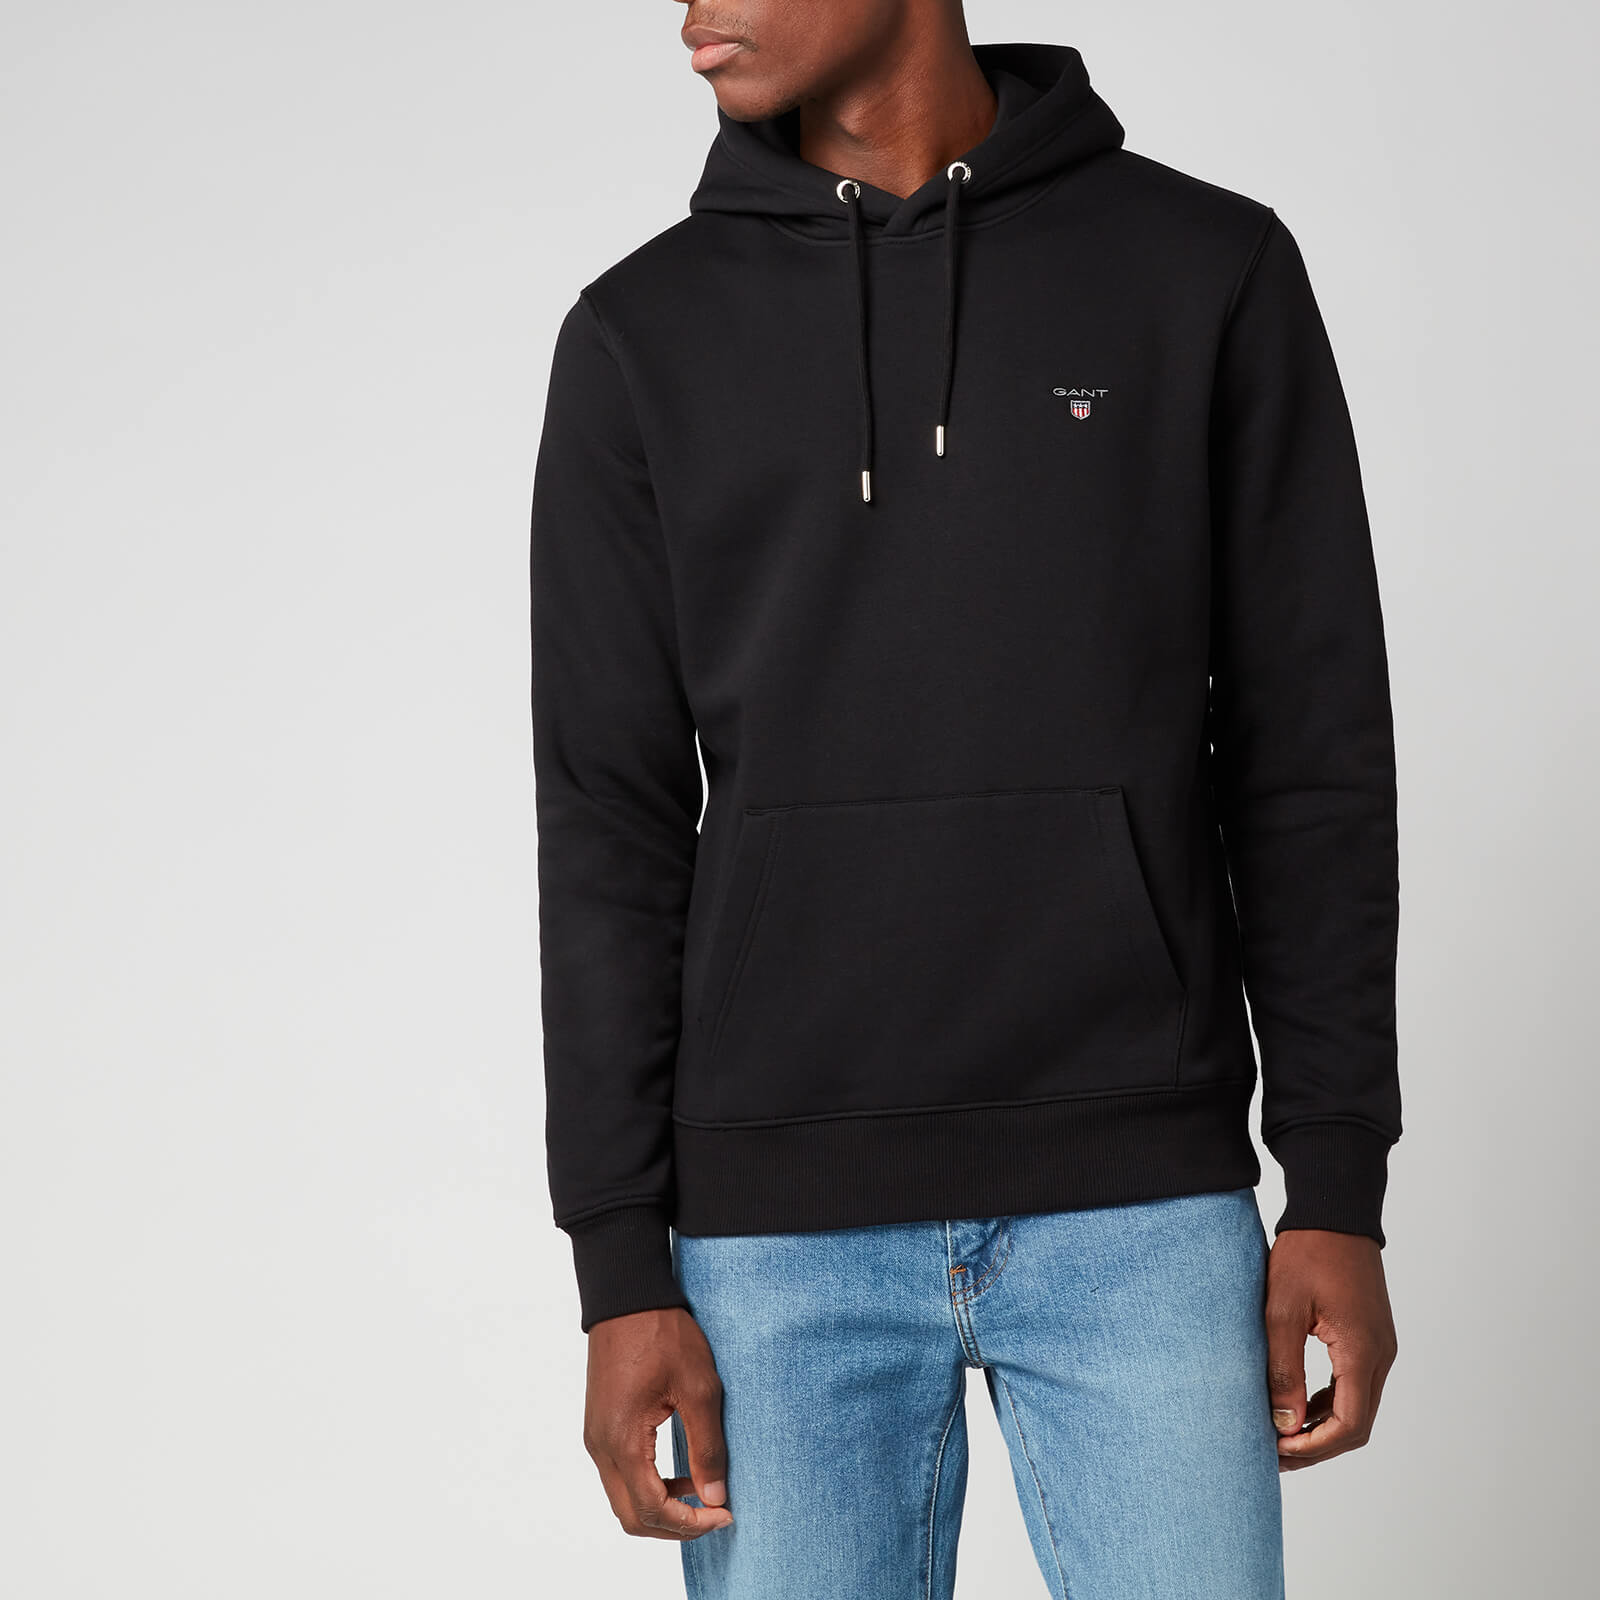 gant regular fit kapuzen sweatshirt , einfarbig schwarz uomo